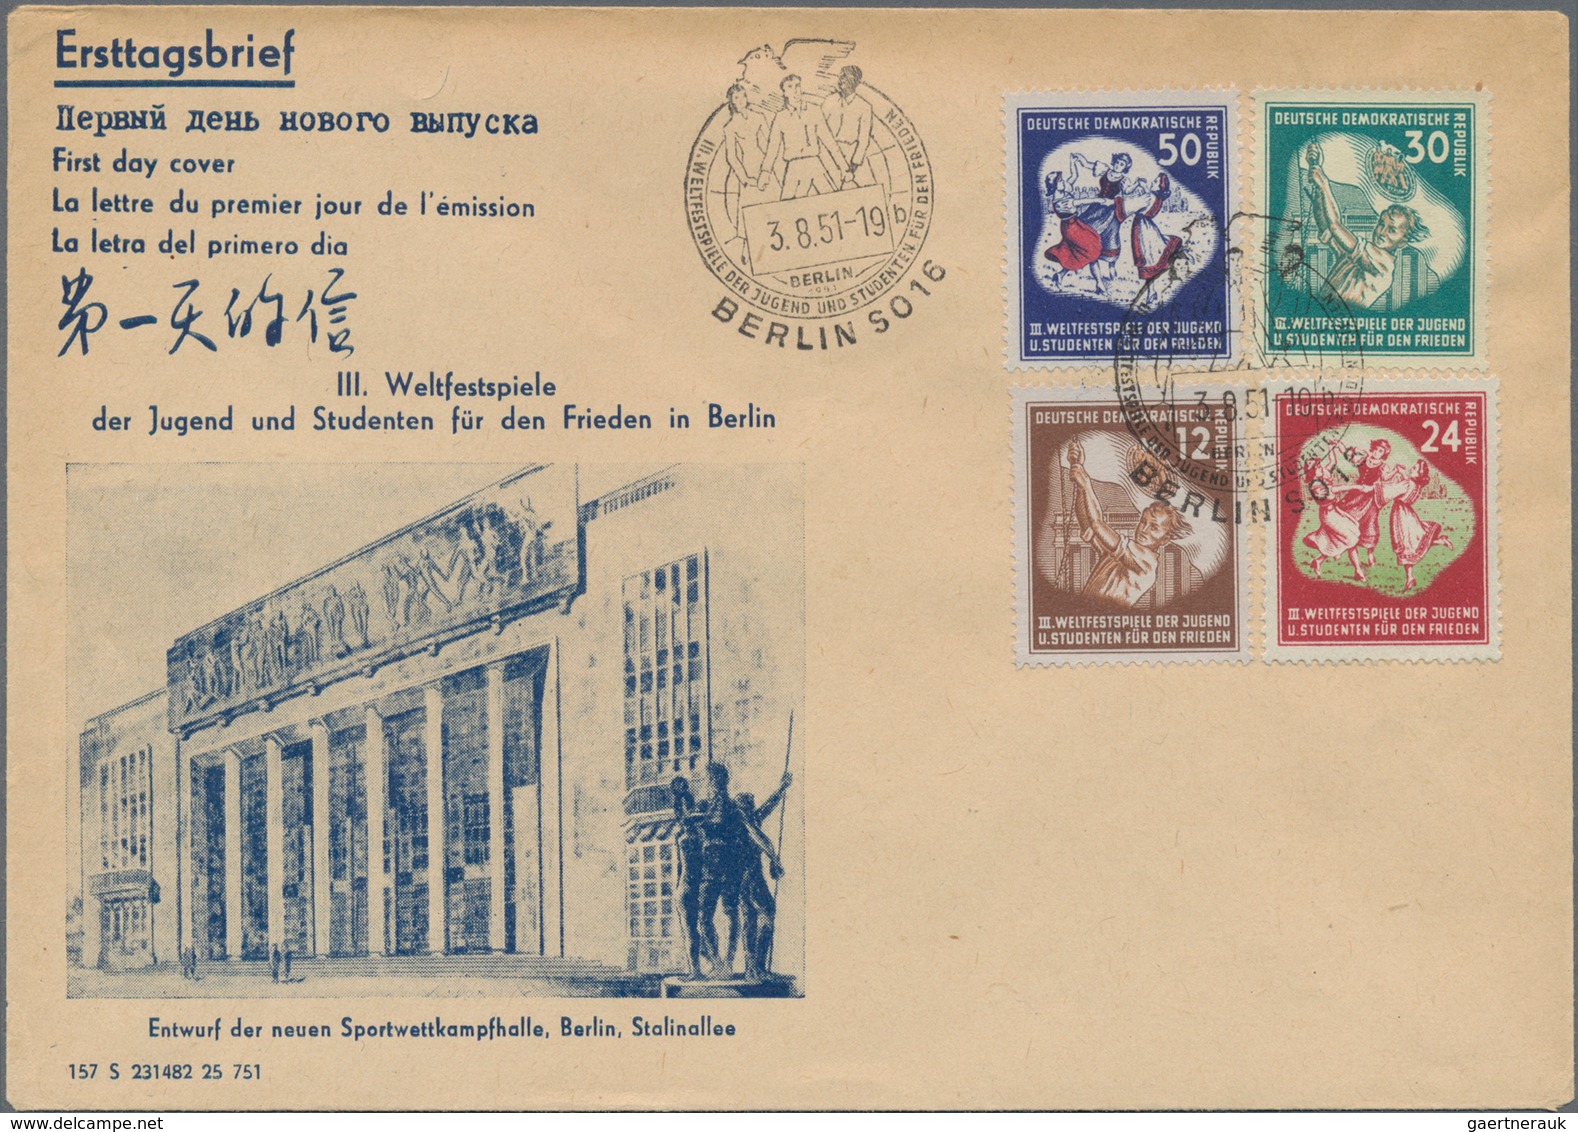 Deutschland nach 1945: 1949/2018, Bestand von vorrangig F.D.C. in 10 Alben bzw. Ordnern, dabei DDR m